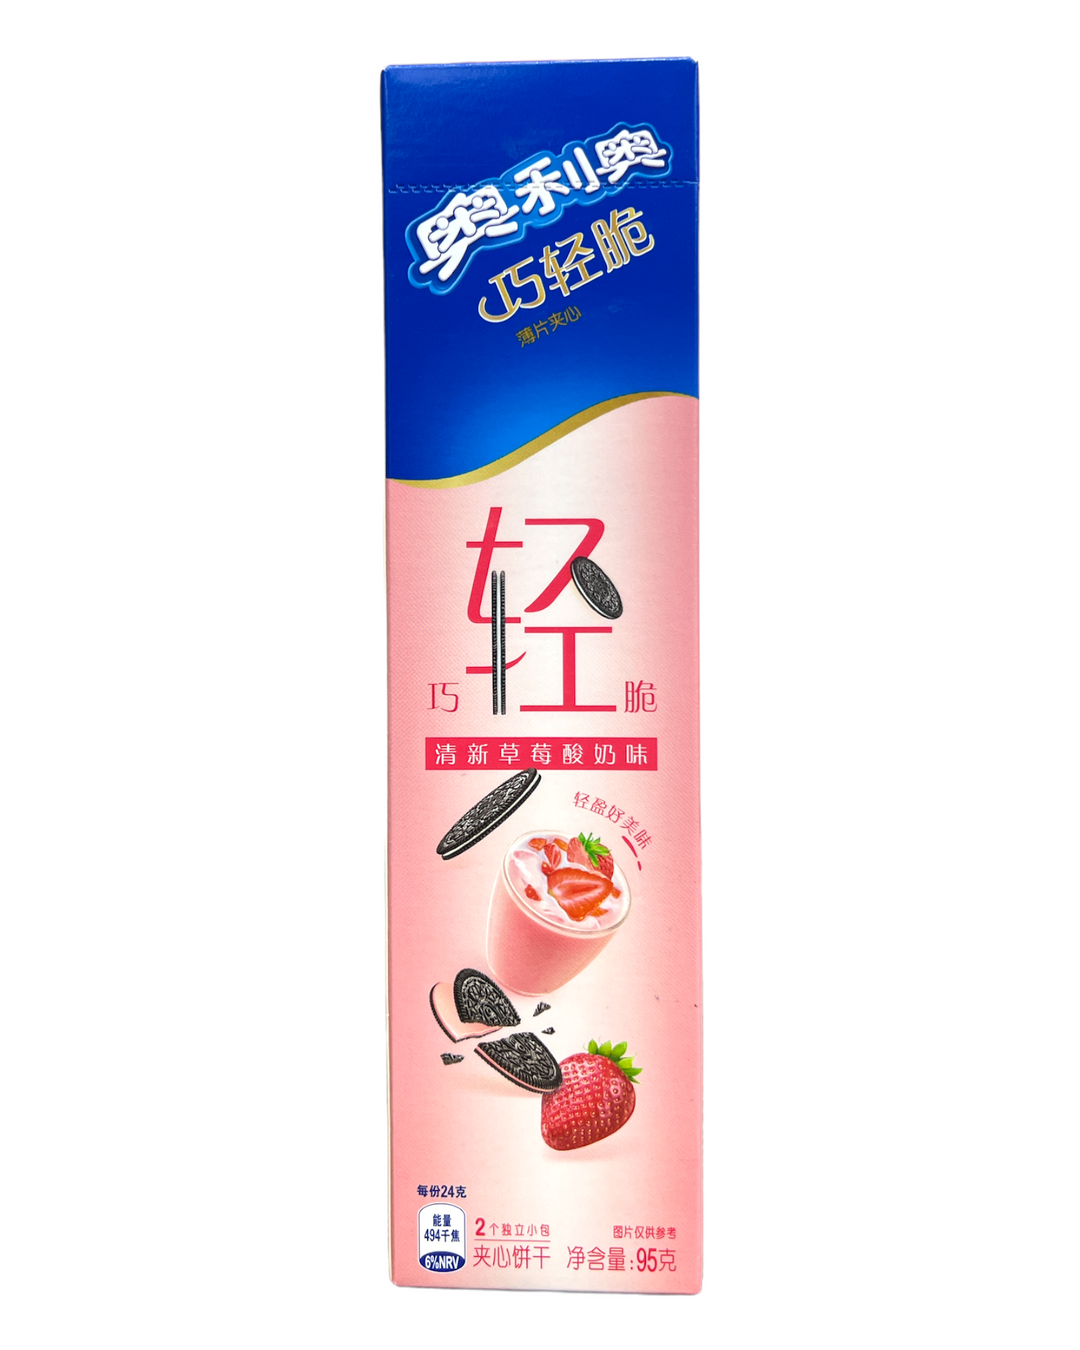 Oreo Thins Strawberry Yogurt - China